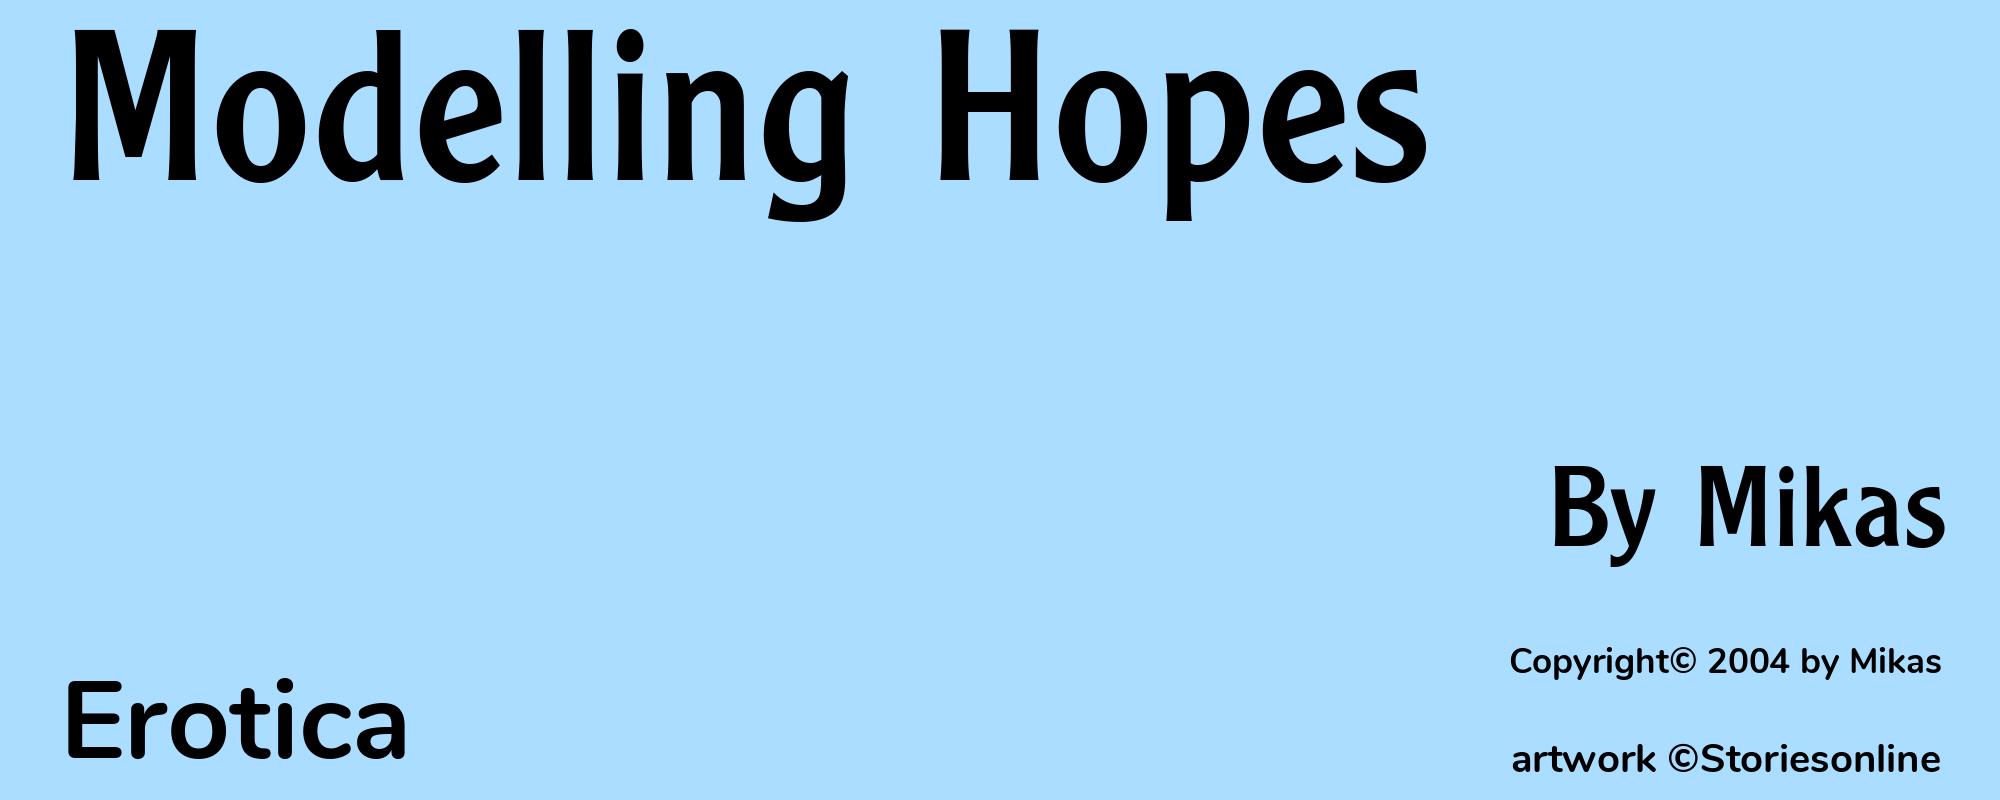 Modelling Hopes - Cover